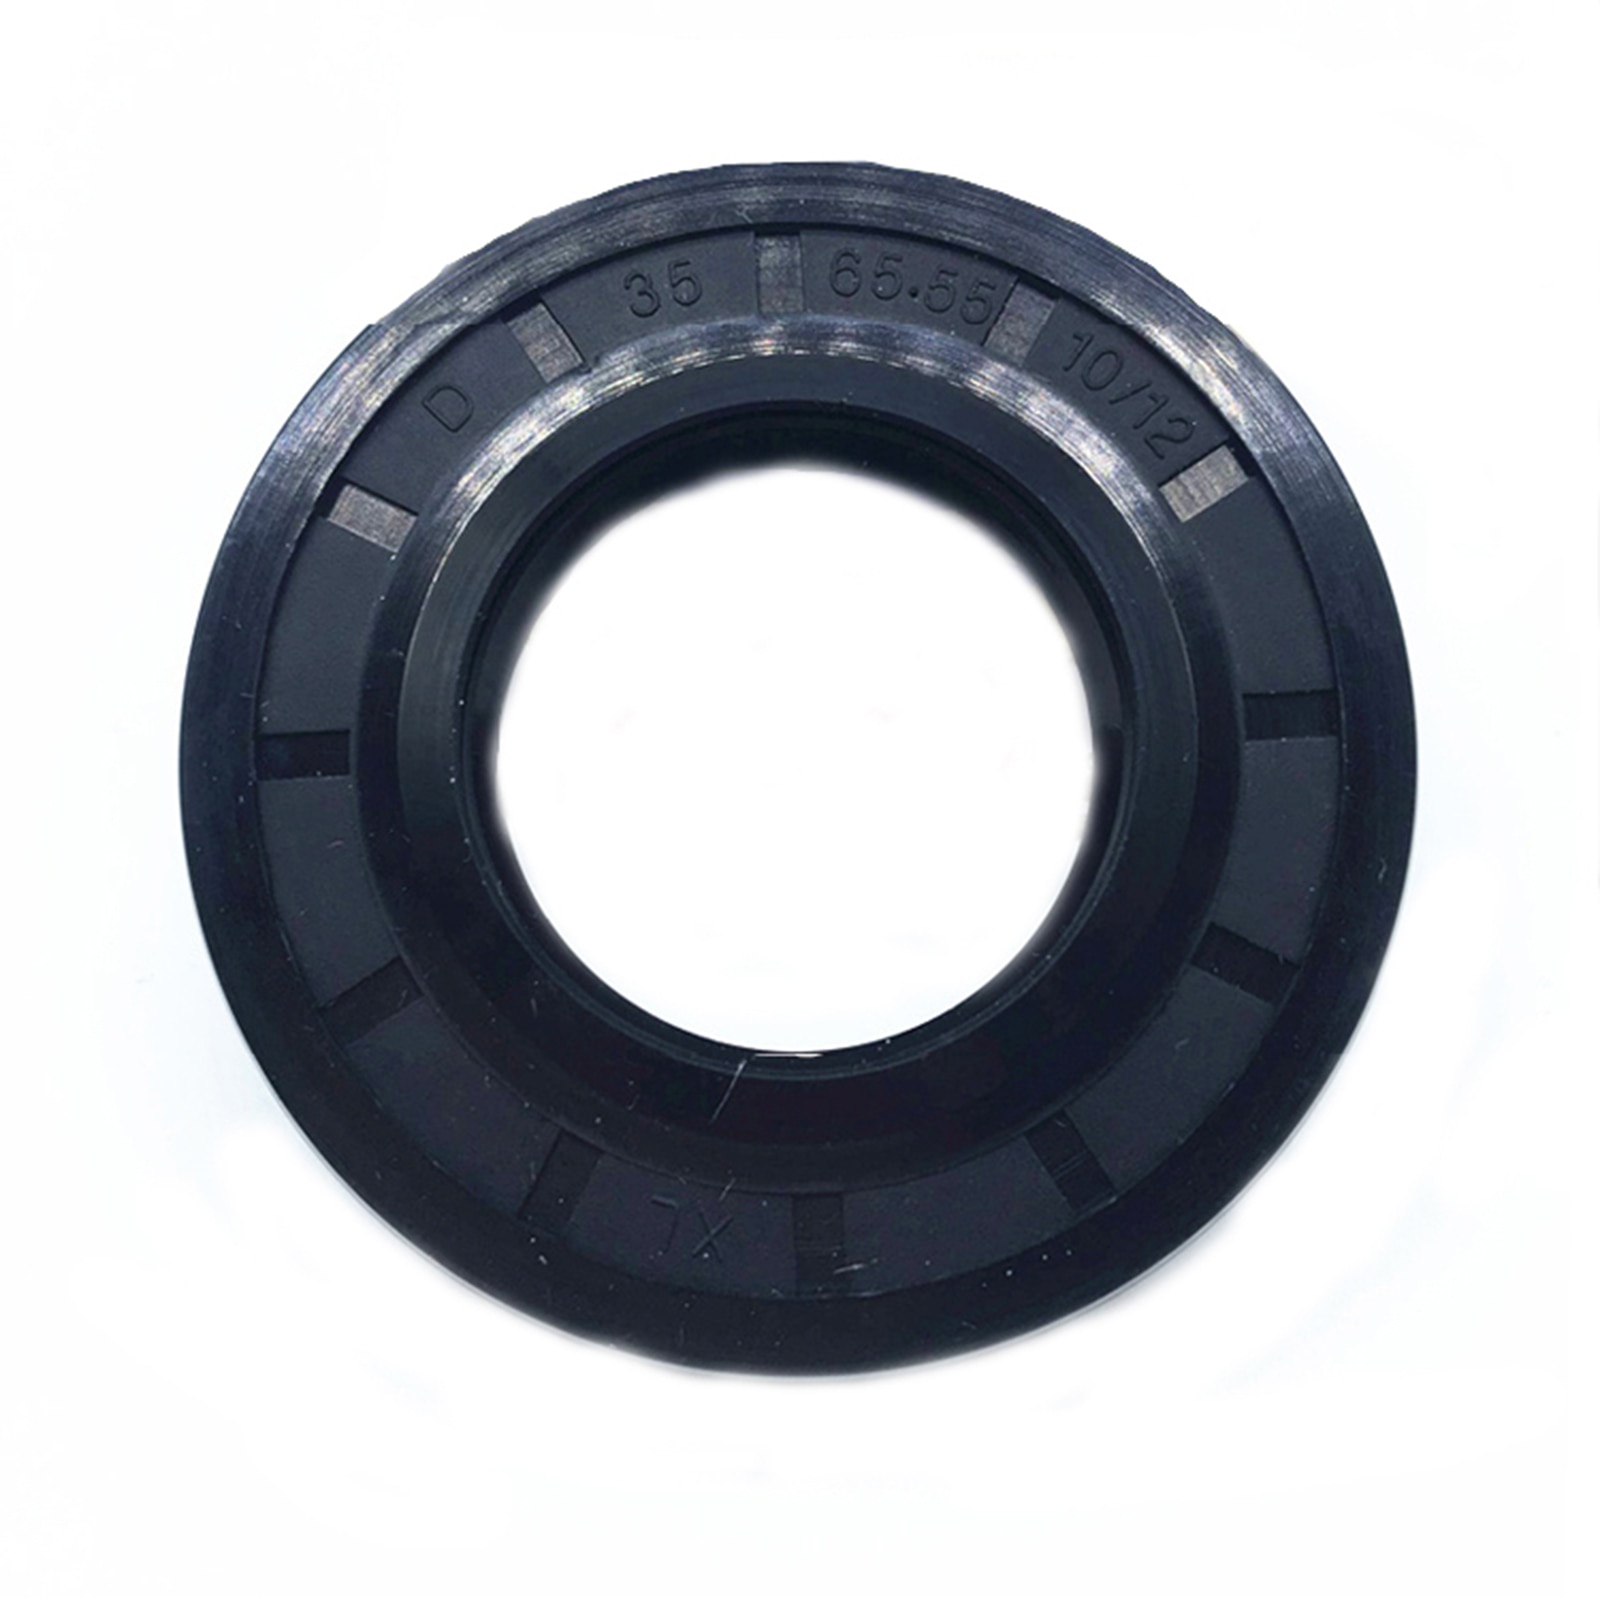 Original Water Seal for Samsung D 35 65.55 10/12 Drum Washing Machine Oil Seal Washing Machine Parts Accessories